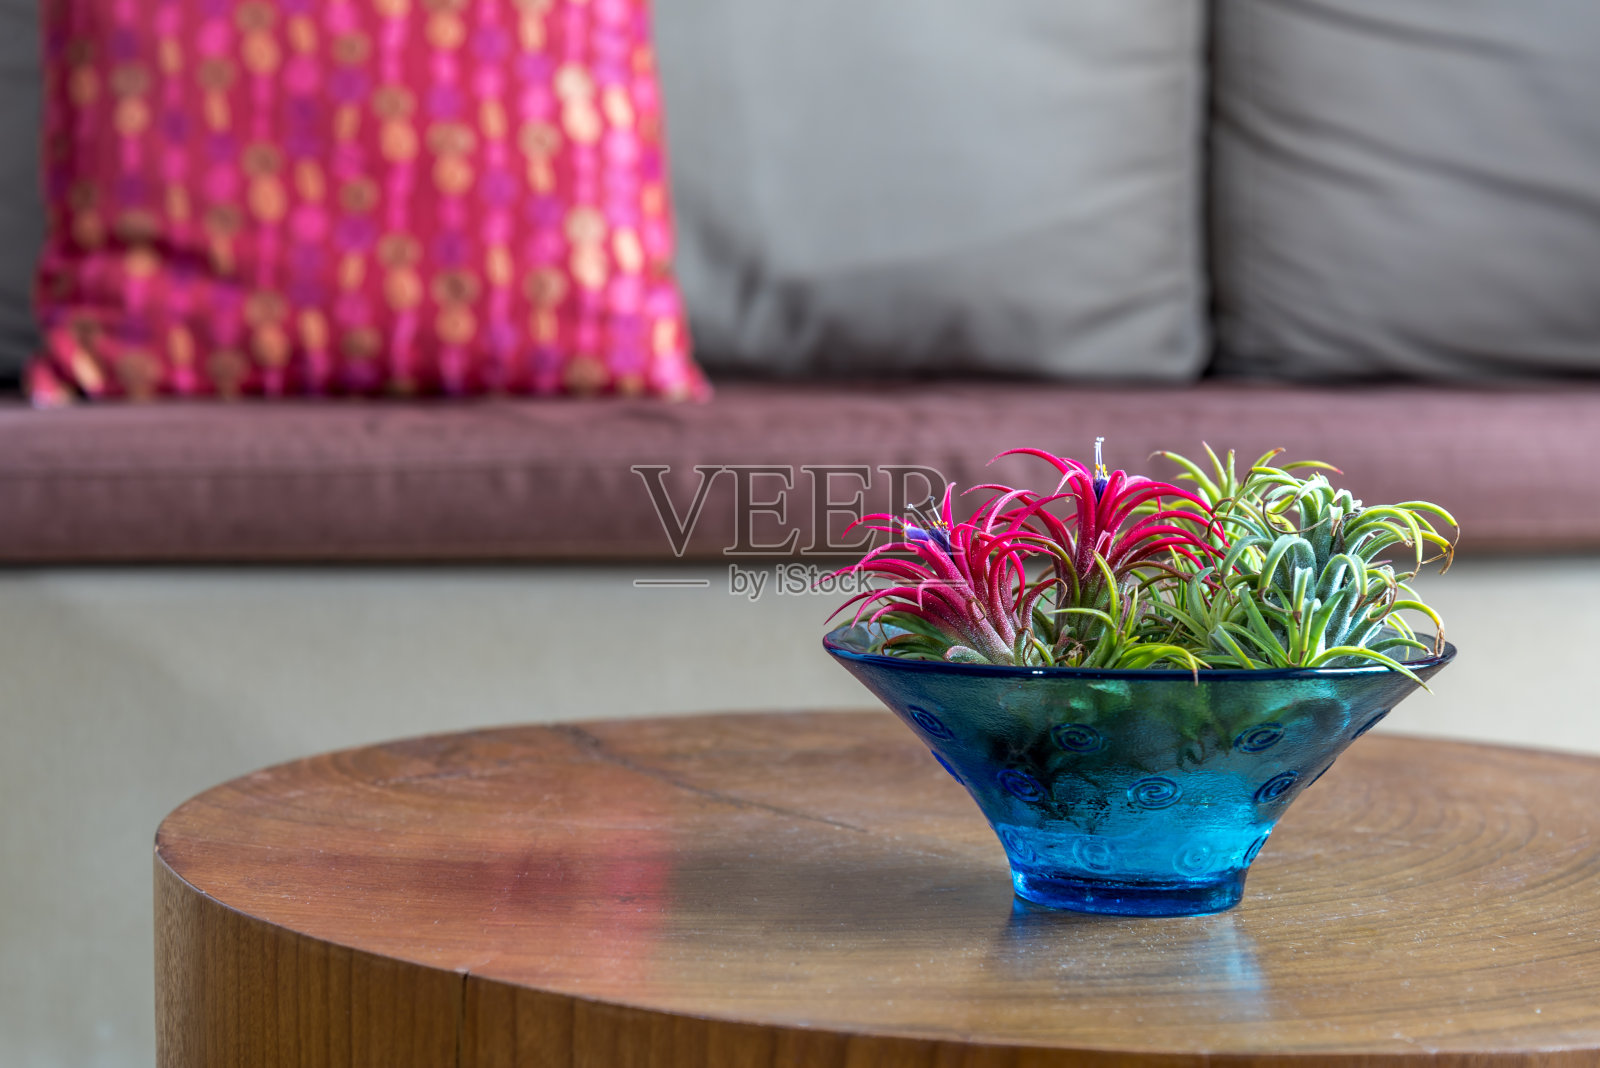 花瓶放在沙发背景的木桌上/生活风格和家居装饰概念照片摄影图片